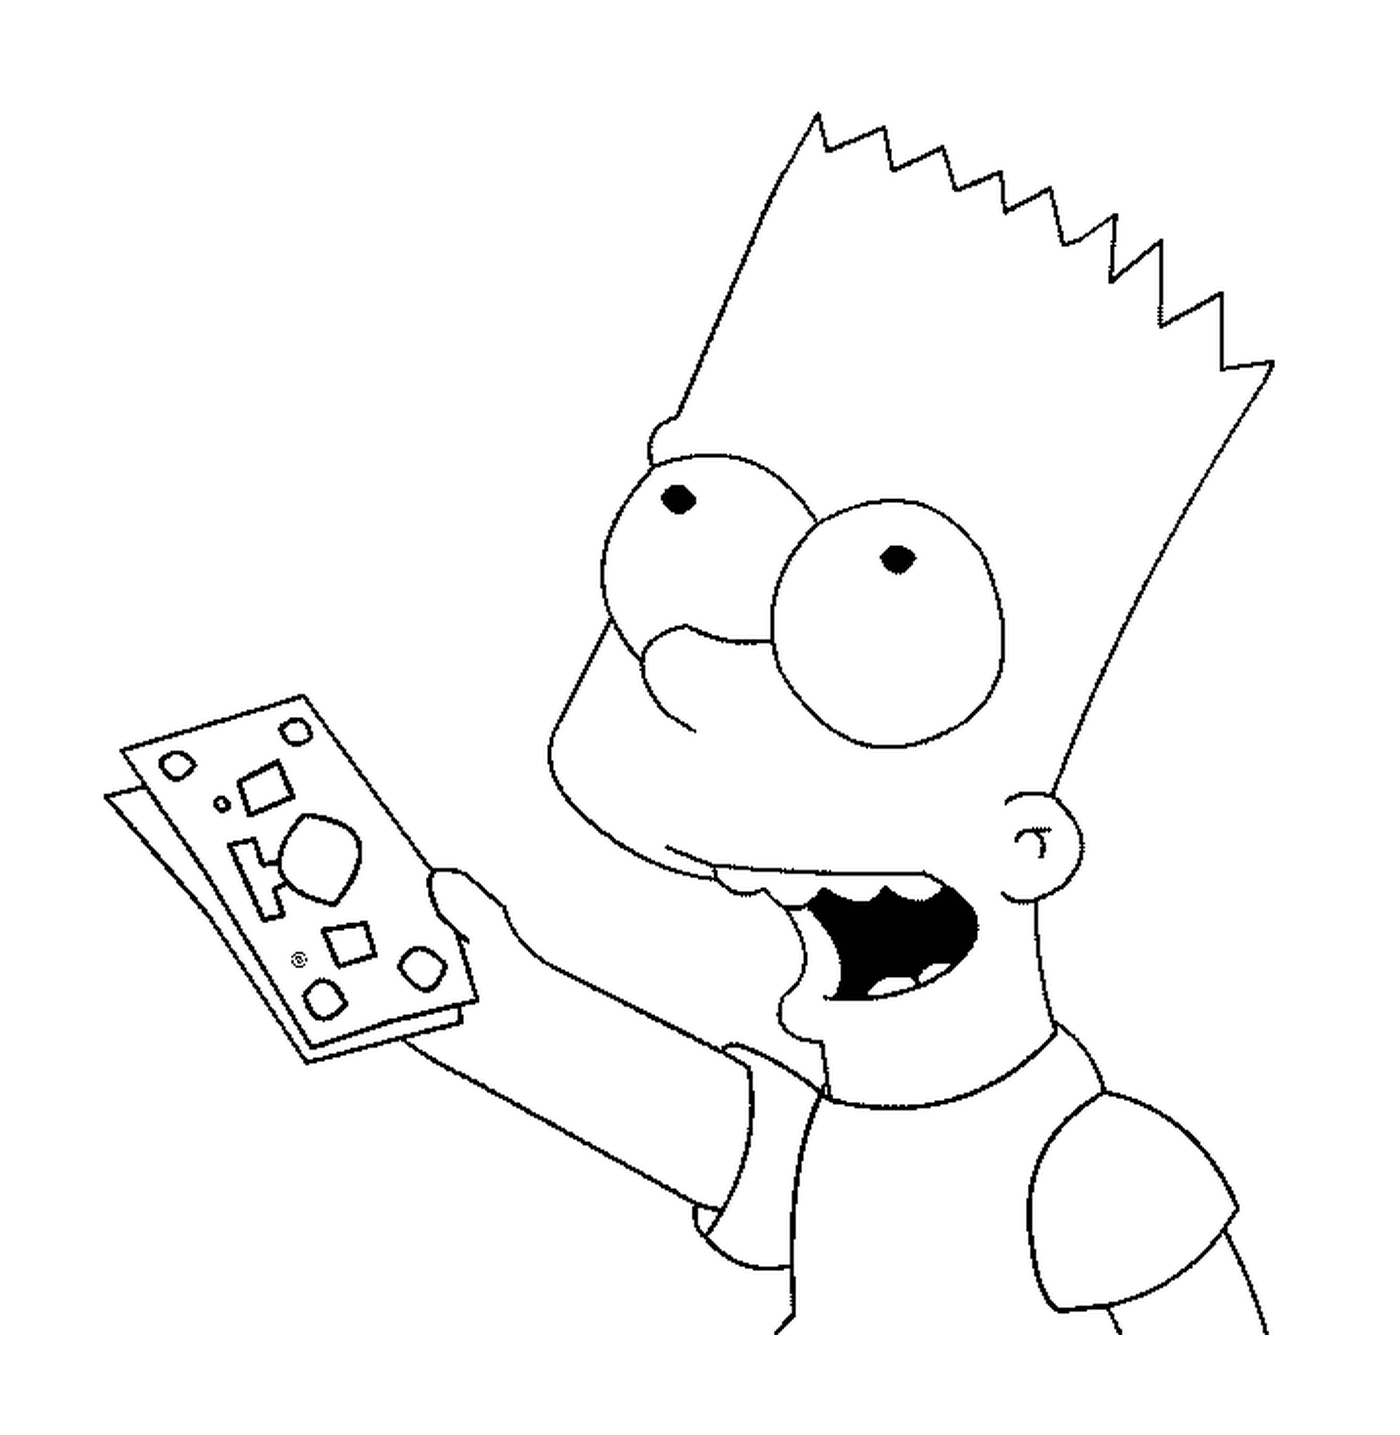  Bart tem notas de banco 